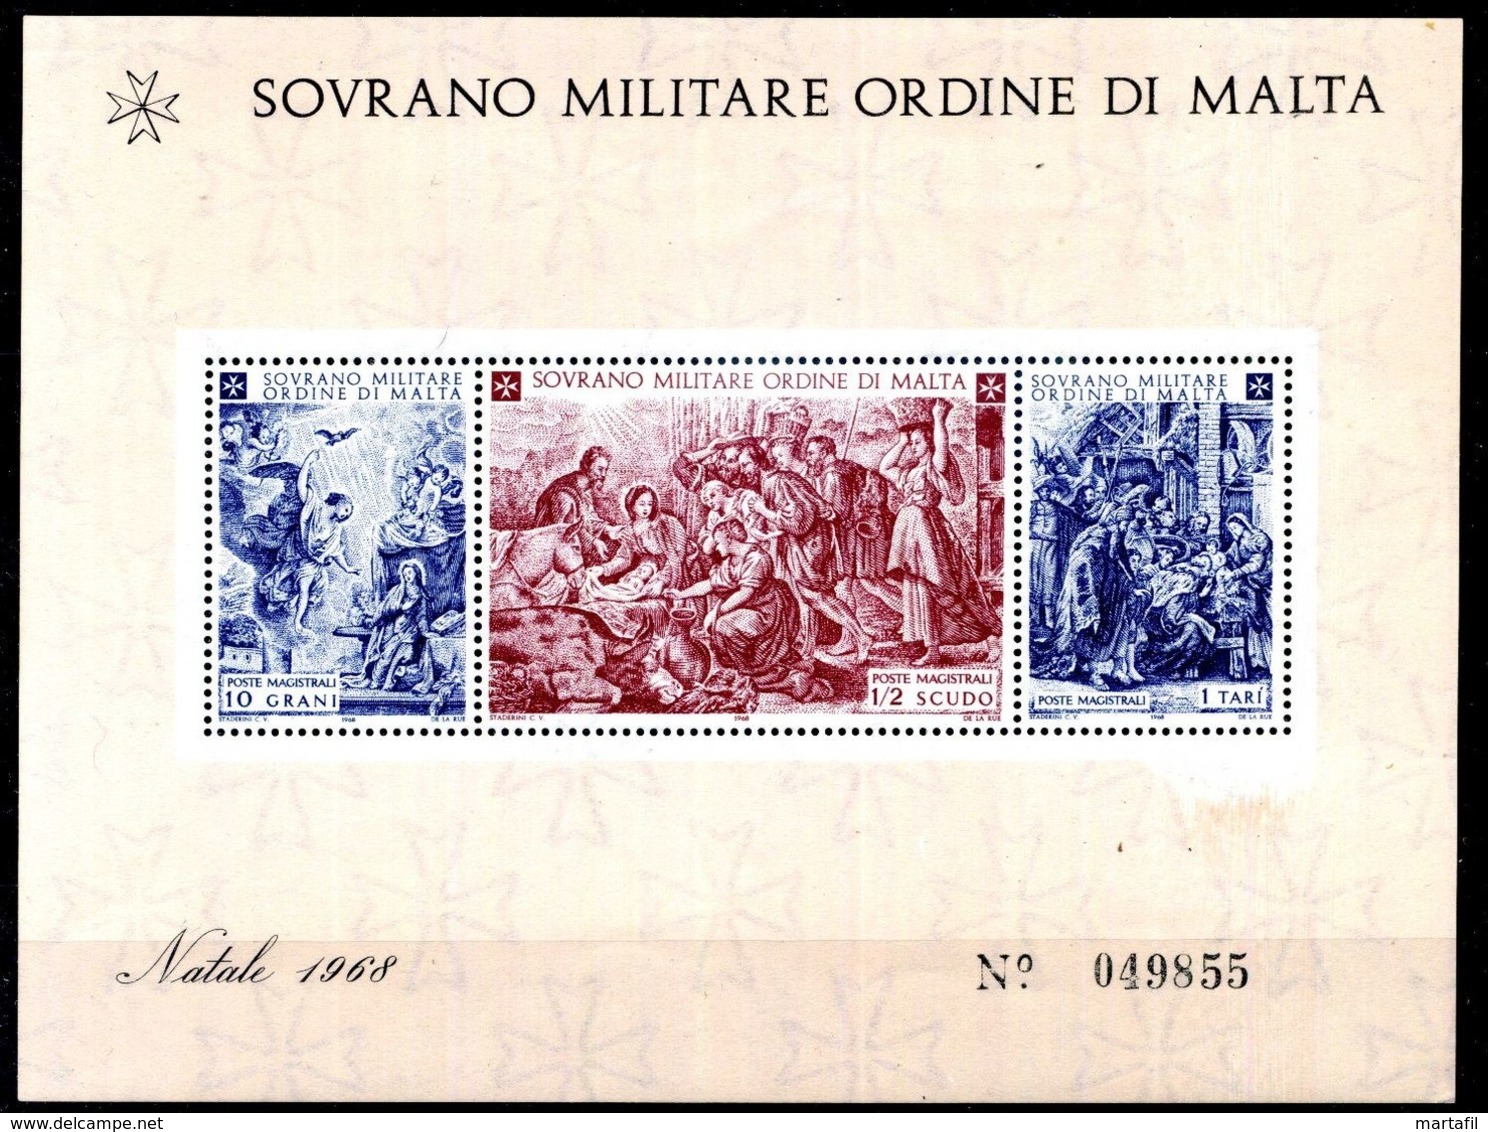 1968 SMOM BF1 MNH ** - Sovrano Militare Ordine Di Malta